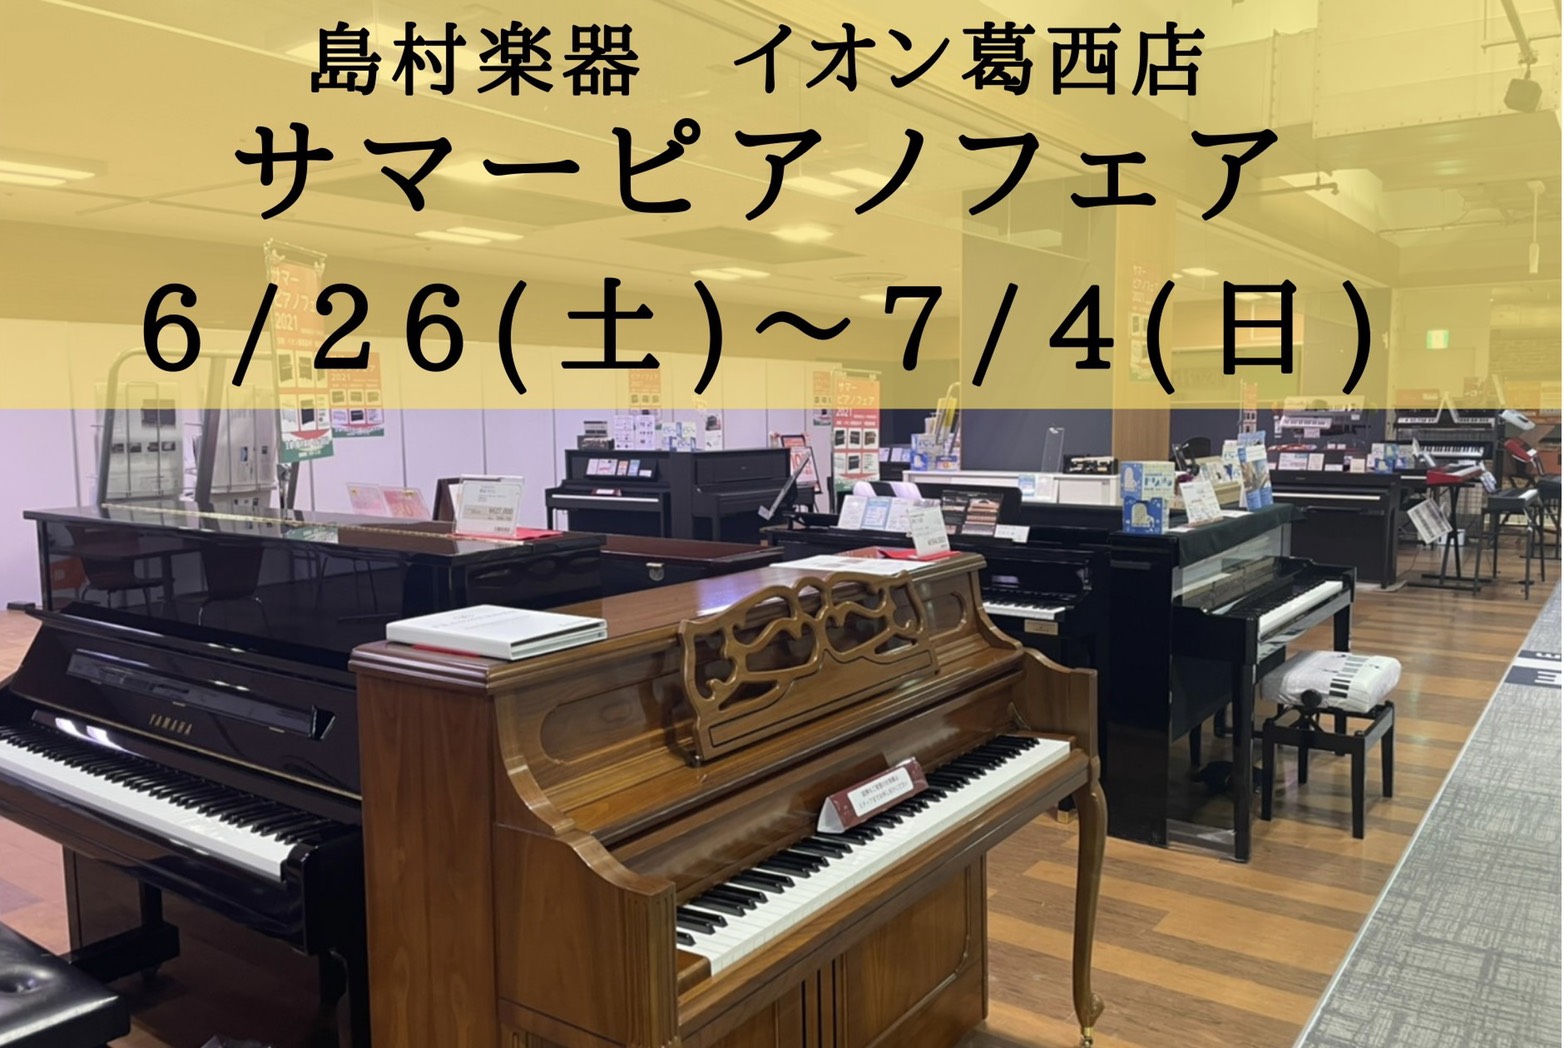 サマーピアノフェア 6 26 土 7 4 日 イオン4f特設会場にて開催 イオン葛西店 店舗情報 島村楽器